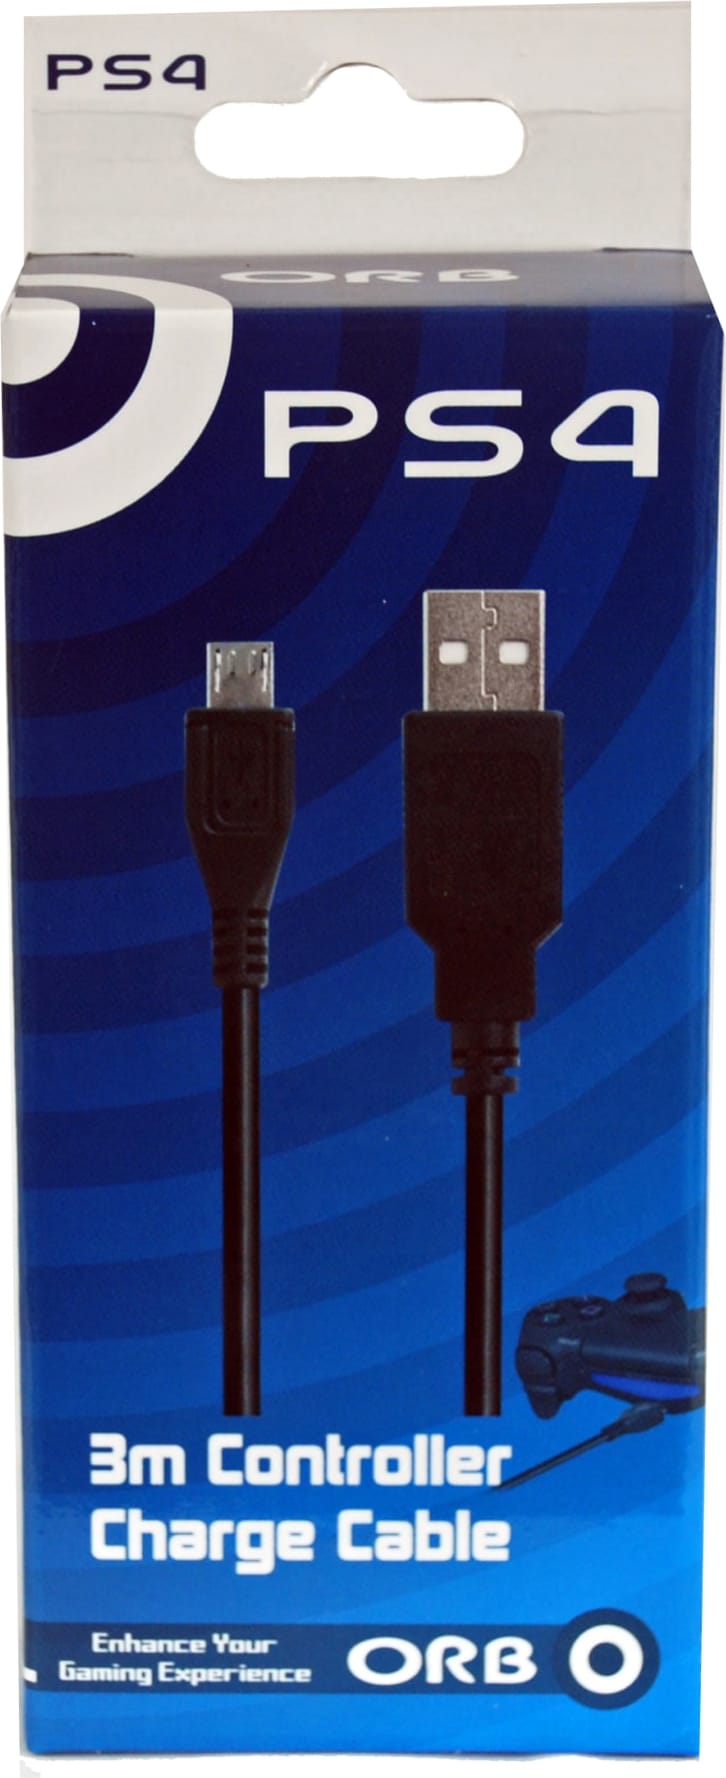 Slumber Interesting stout ORB PS4 USB to Micro USB 3M latauskaapeli | Karkkainen.com verkkokauppa